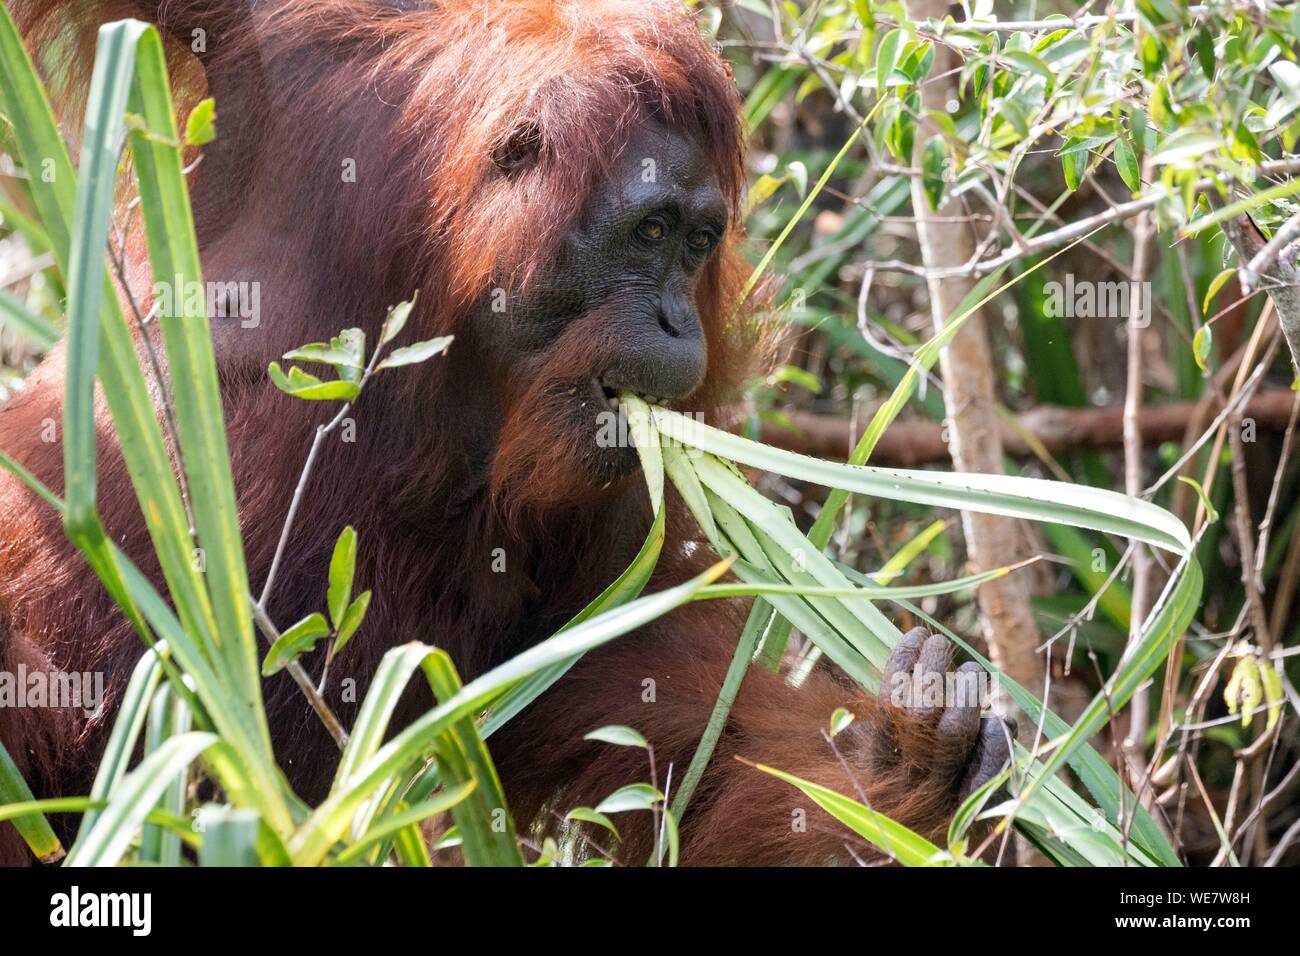 Indonesia, Borneo, Tanjung Puting National Park, Bornean orangutan (Pongo pygmaeus pygmaeus), near the water Stock Photo